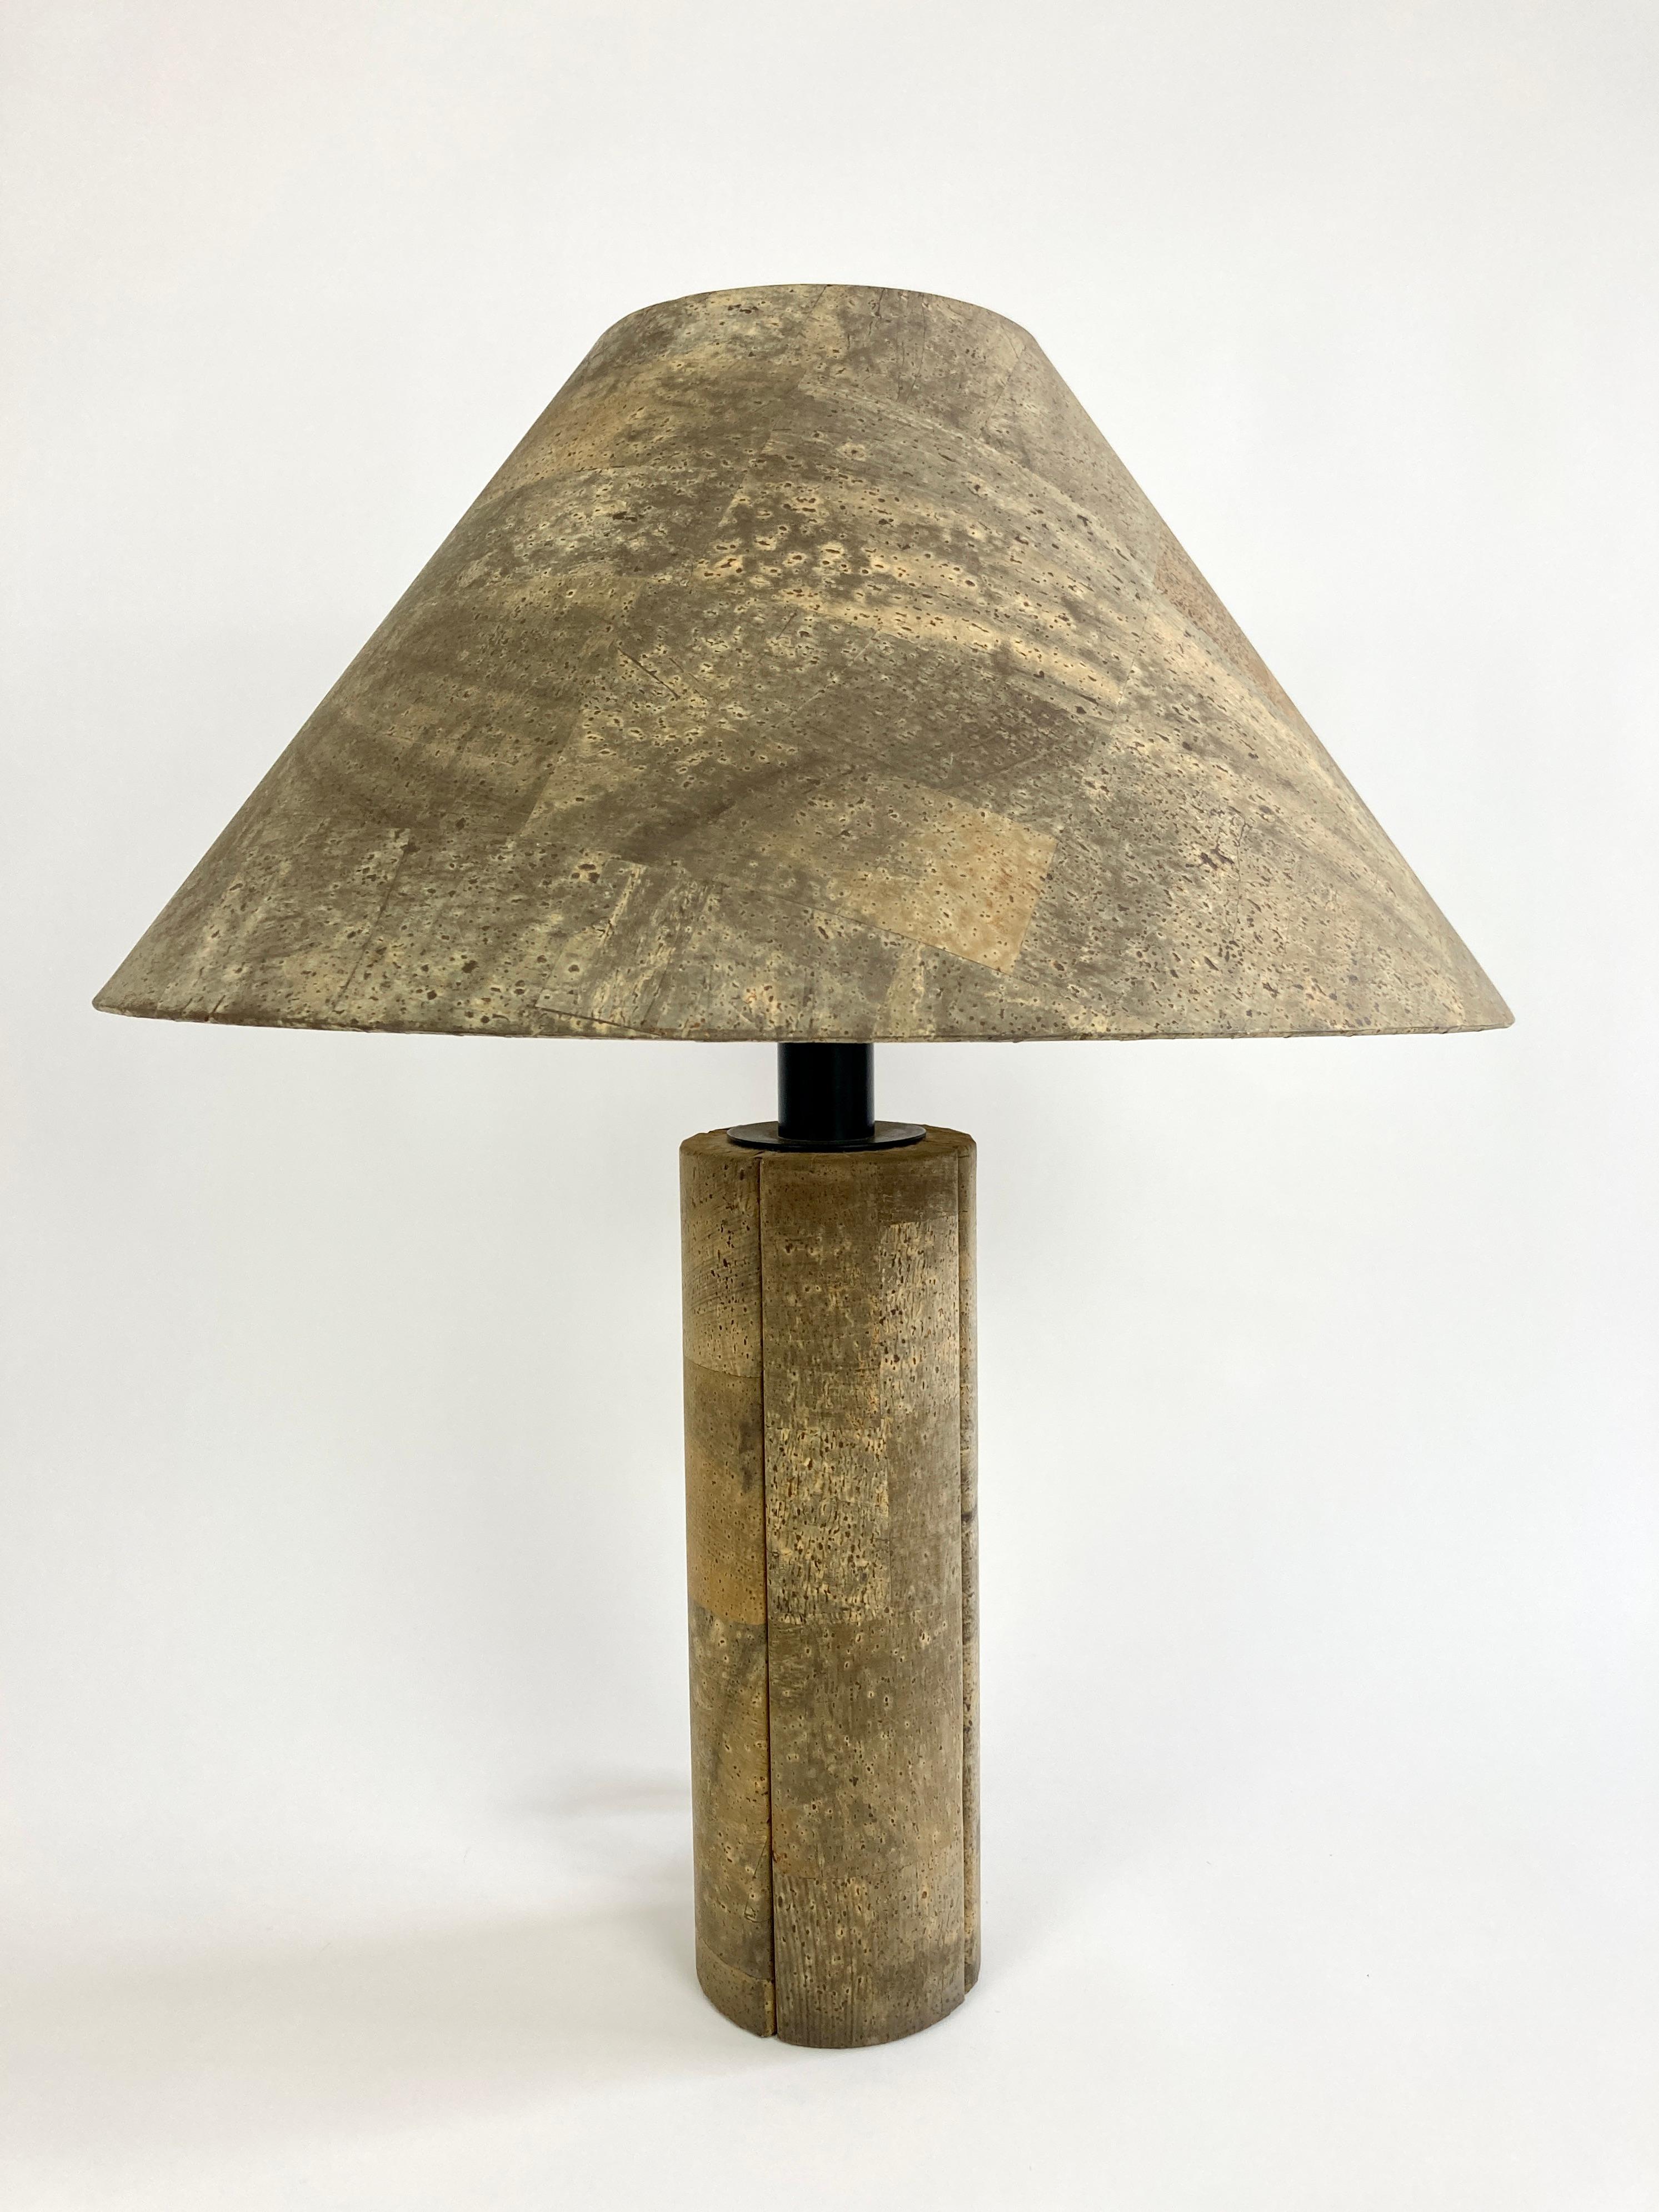 cork lamp shade